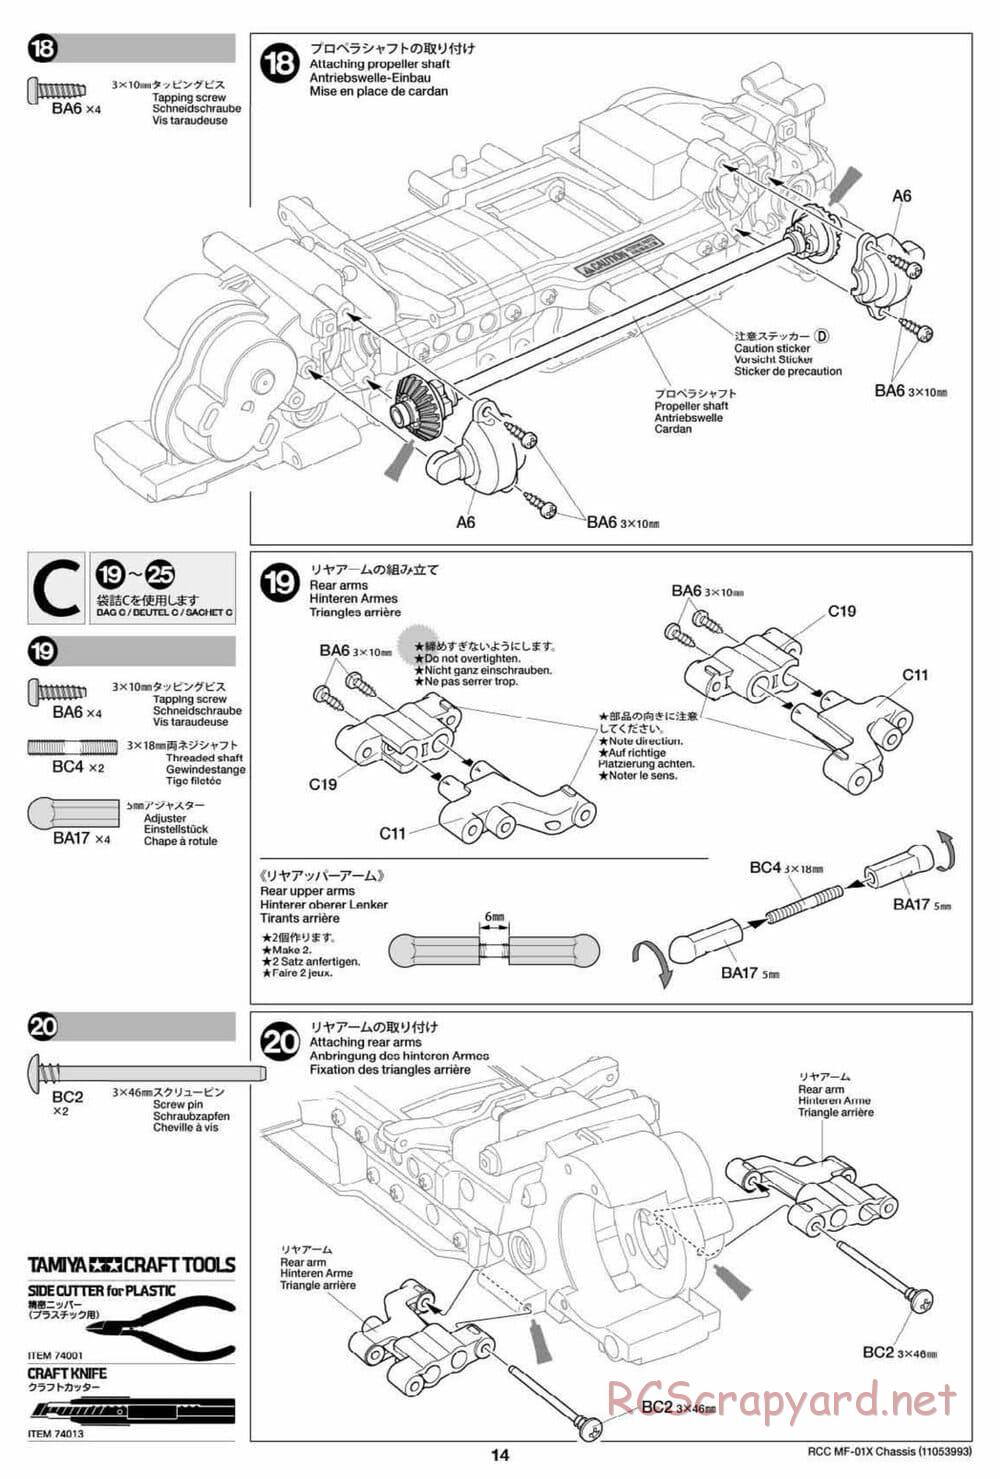 Tamiya - MF-01X Chassis - Manual - Page 14